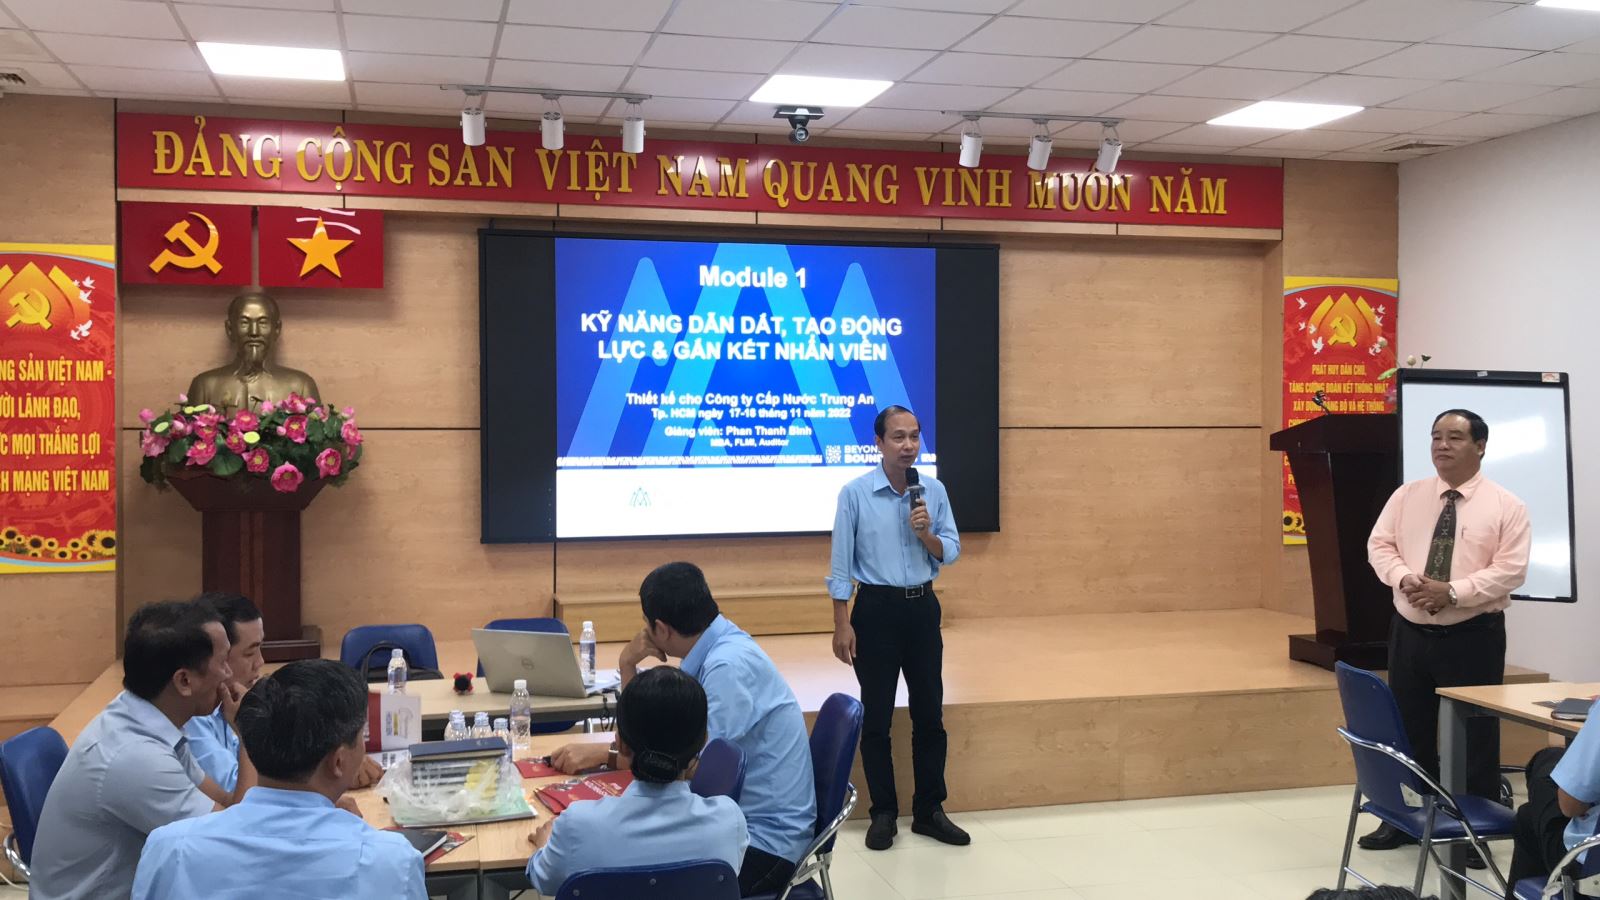 Ông Nguyễn Minh Hải - Phó Giám đốc Kinh doanh phát biểu khai giảng khóa học